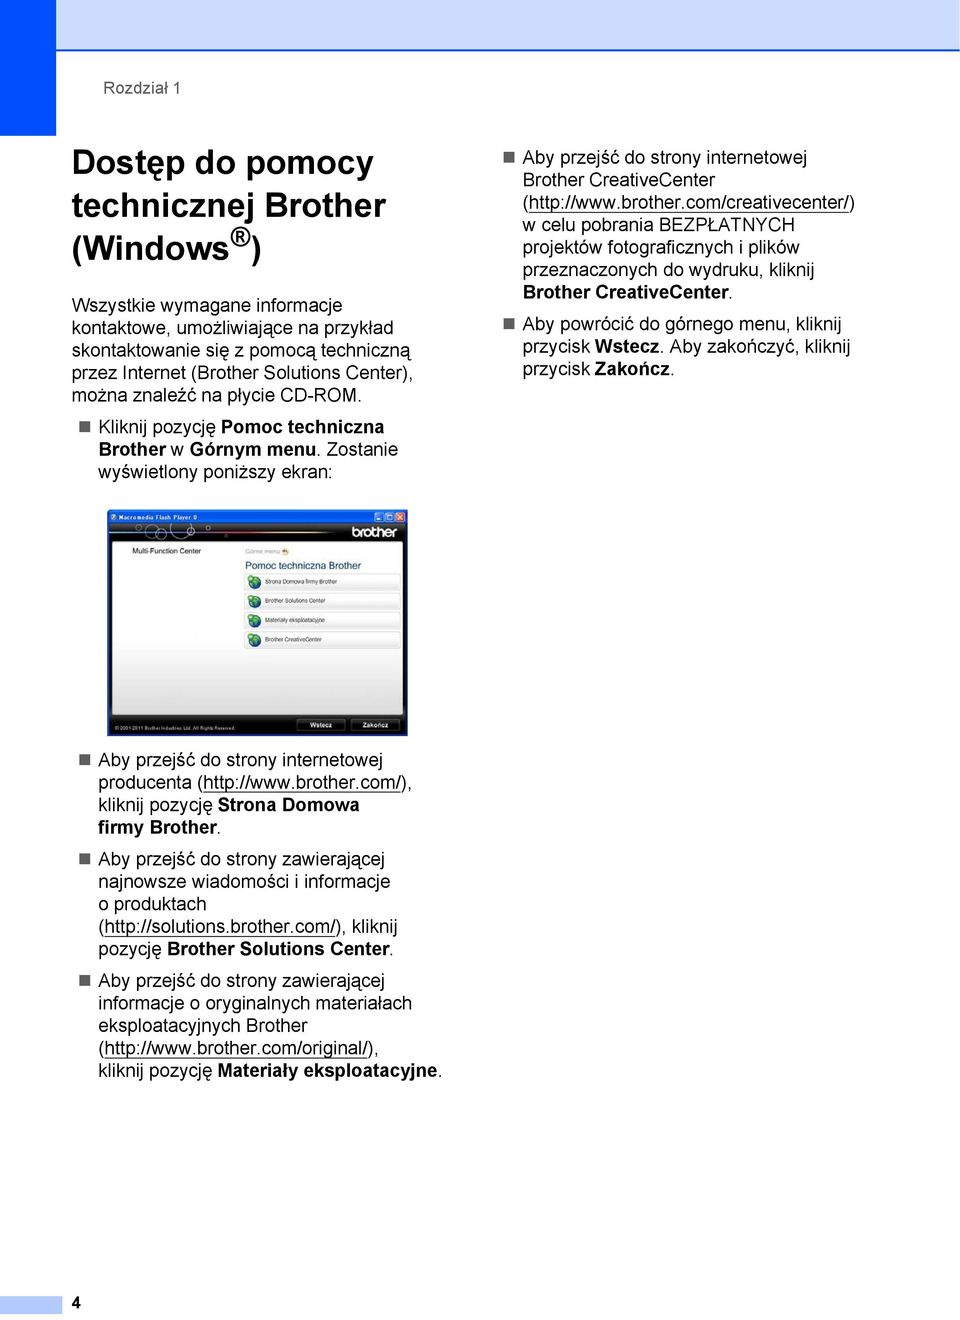 Zostanie wyświetlony poniższy ekran: Aby przejść do strony internetowej Brother CreativeCenter (http://www.brother.